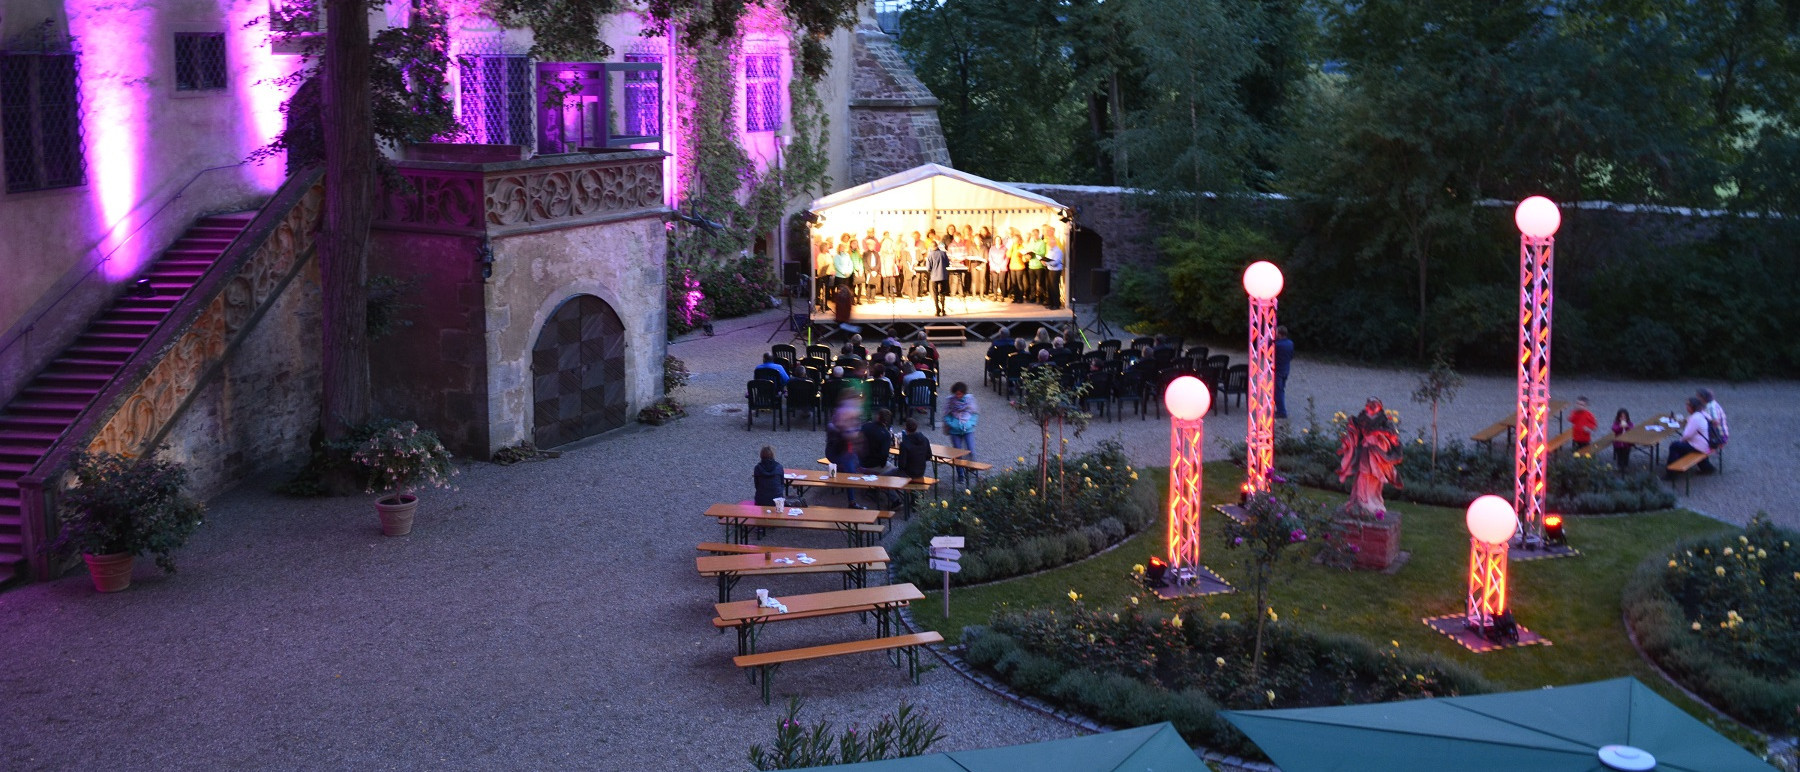 Schlossinnenhof in abendlicher Stimmung. Der Schlossinnenhof ist mit Leuchten geschmückt. Sie leuchten lila und rosa. Auf einer Bühne im Hintergrund stehen Musikerinnen und Musiker. Auf Biertischgarnituren sitzen Gäste.